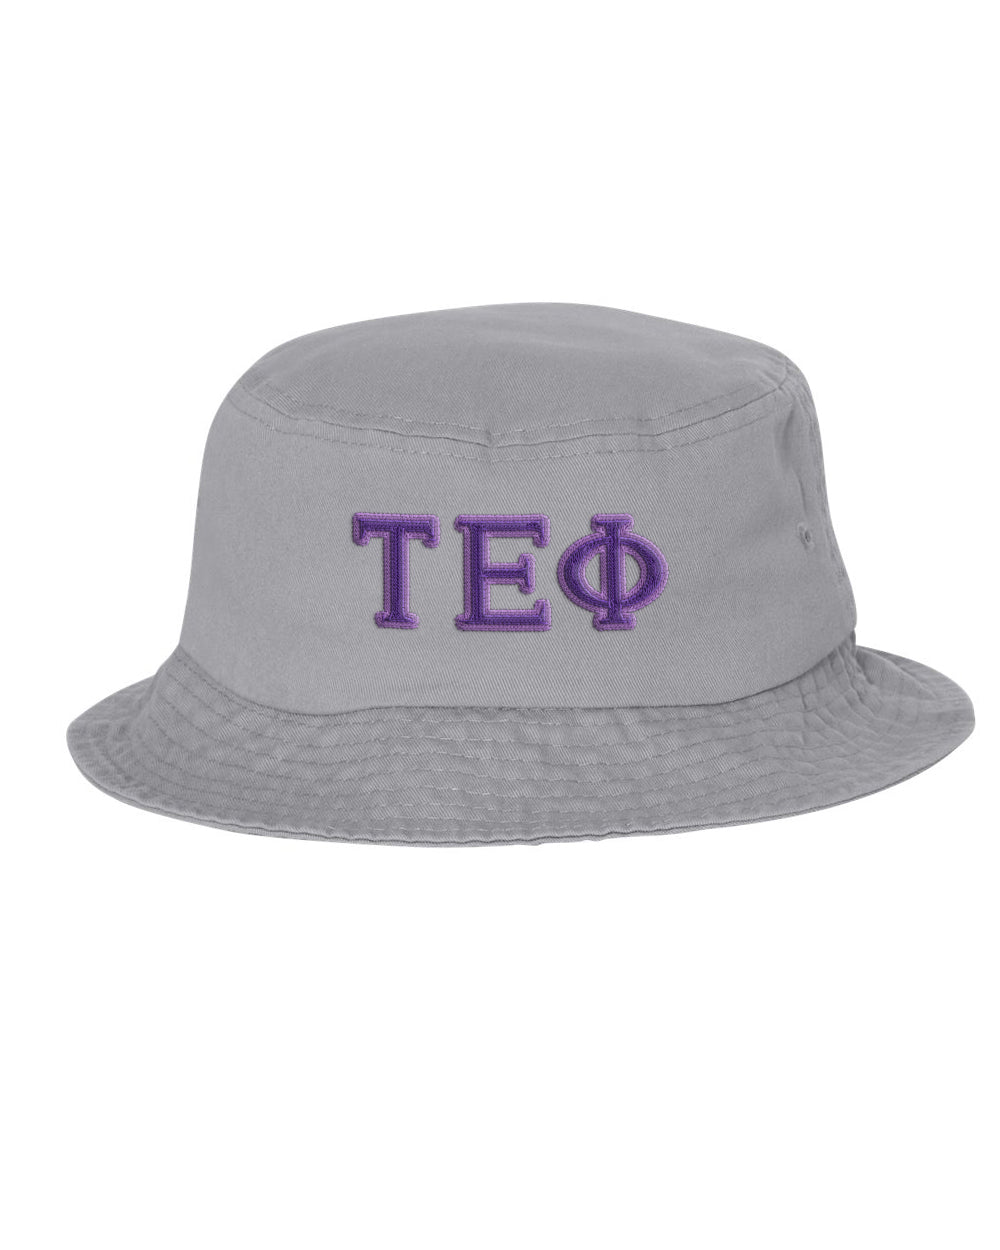 Tau Epsilon Phi Embroidered Bucket Hat